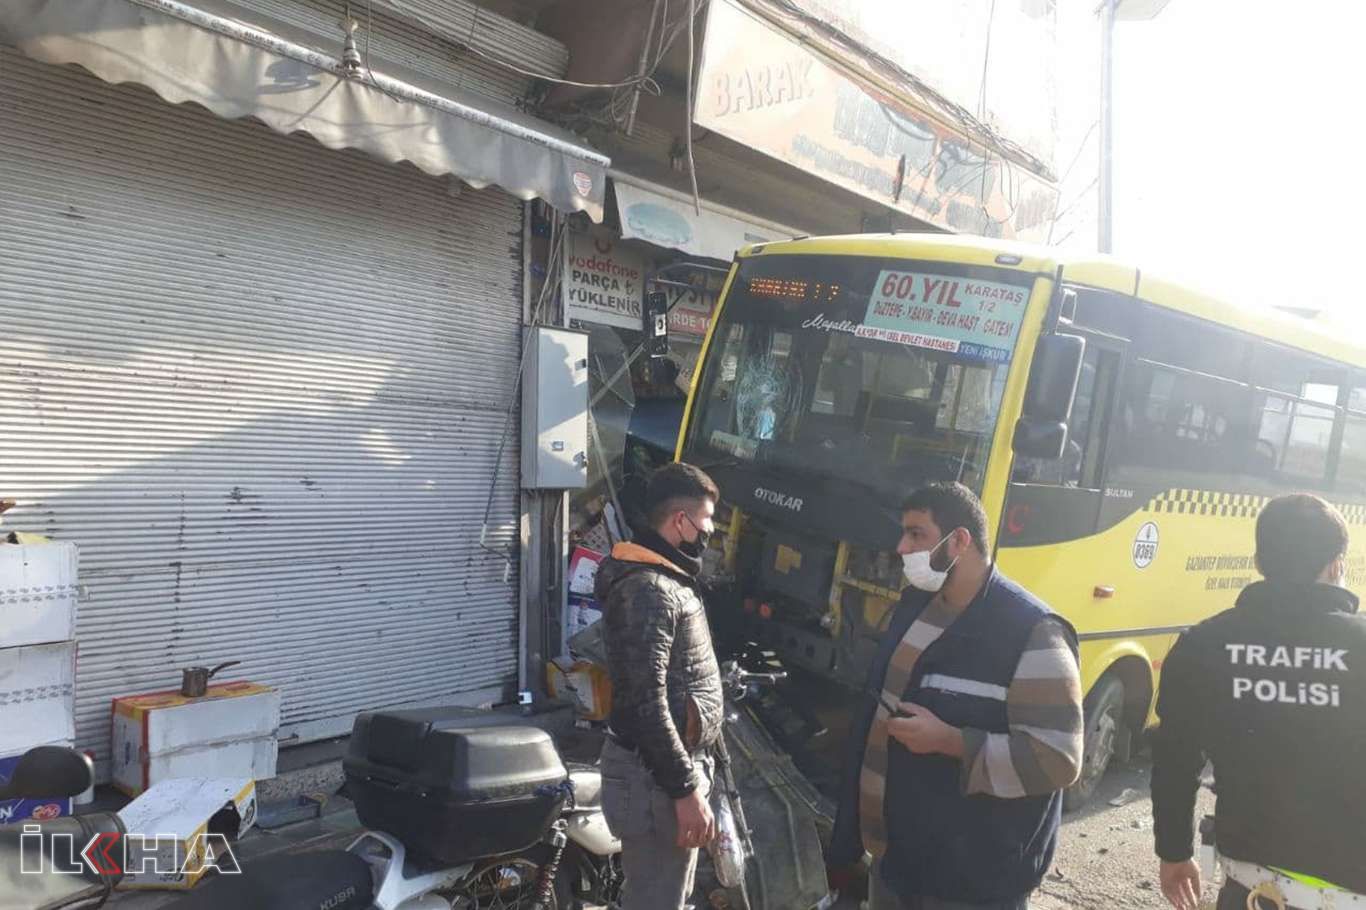 Halk otobüsü büfeye daldı: 1 ölü, 9 yaralı